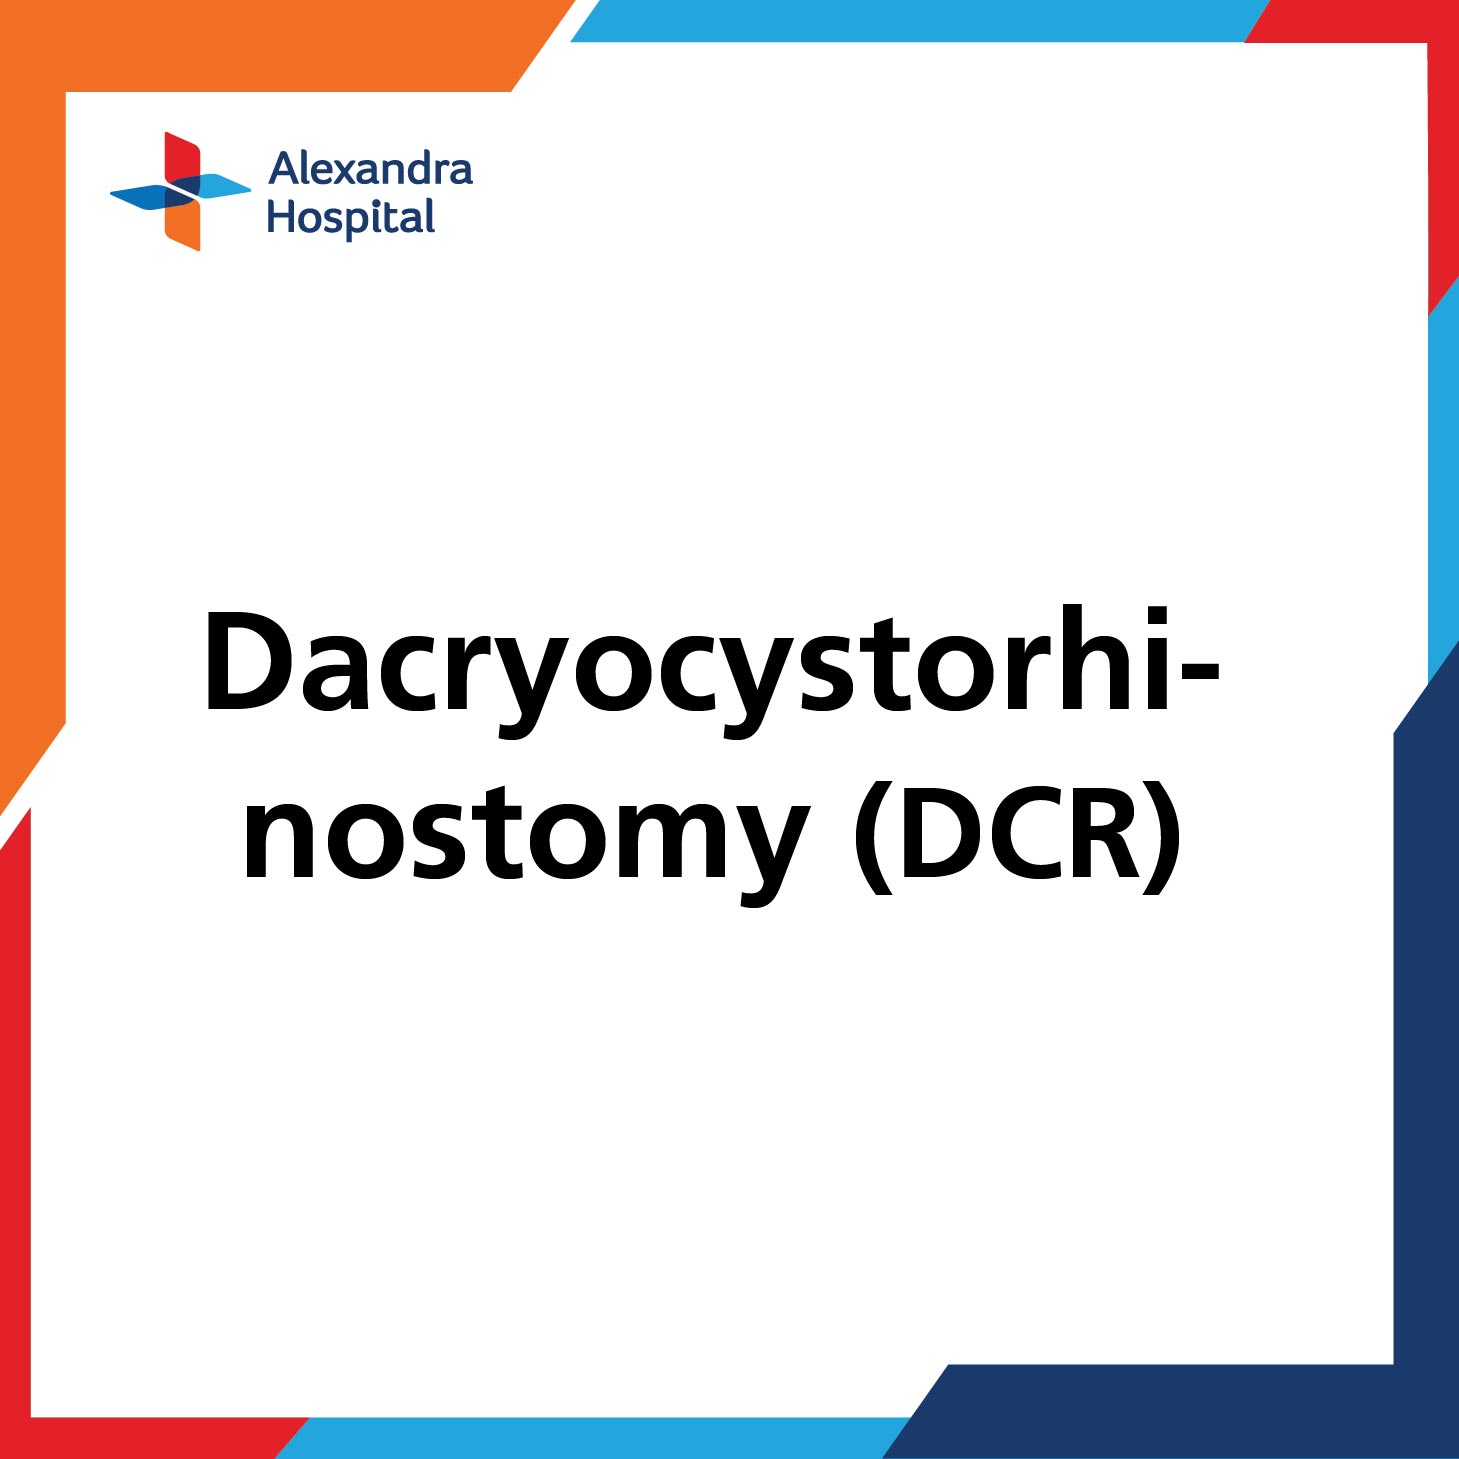 Dacryocystorhinostomy (DCR)